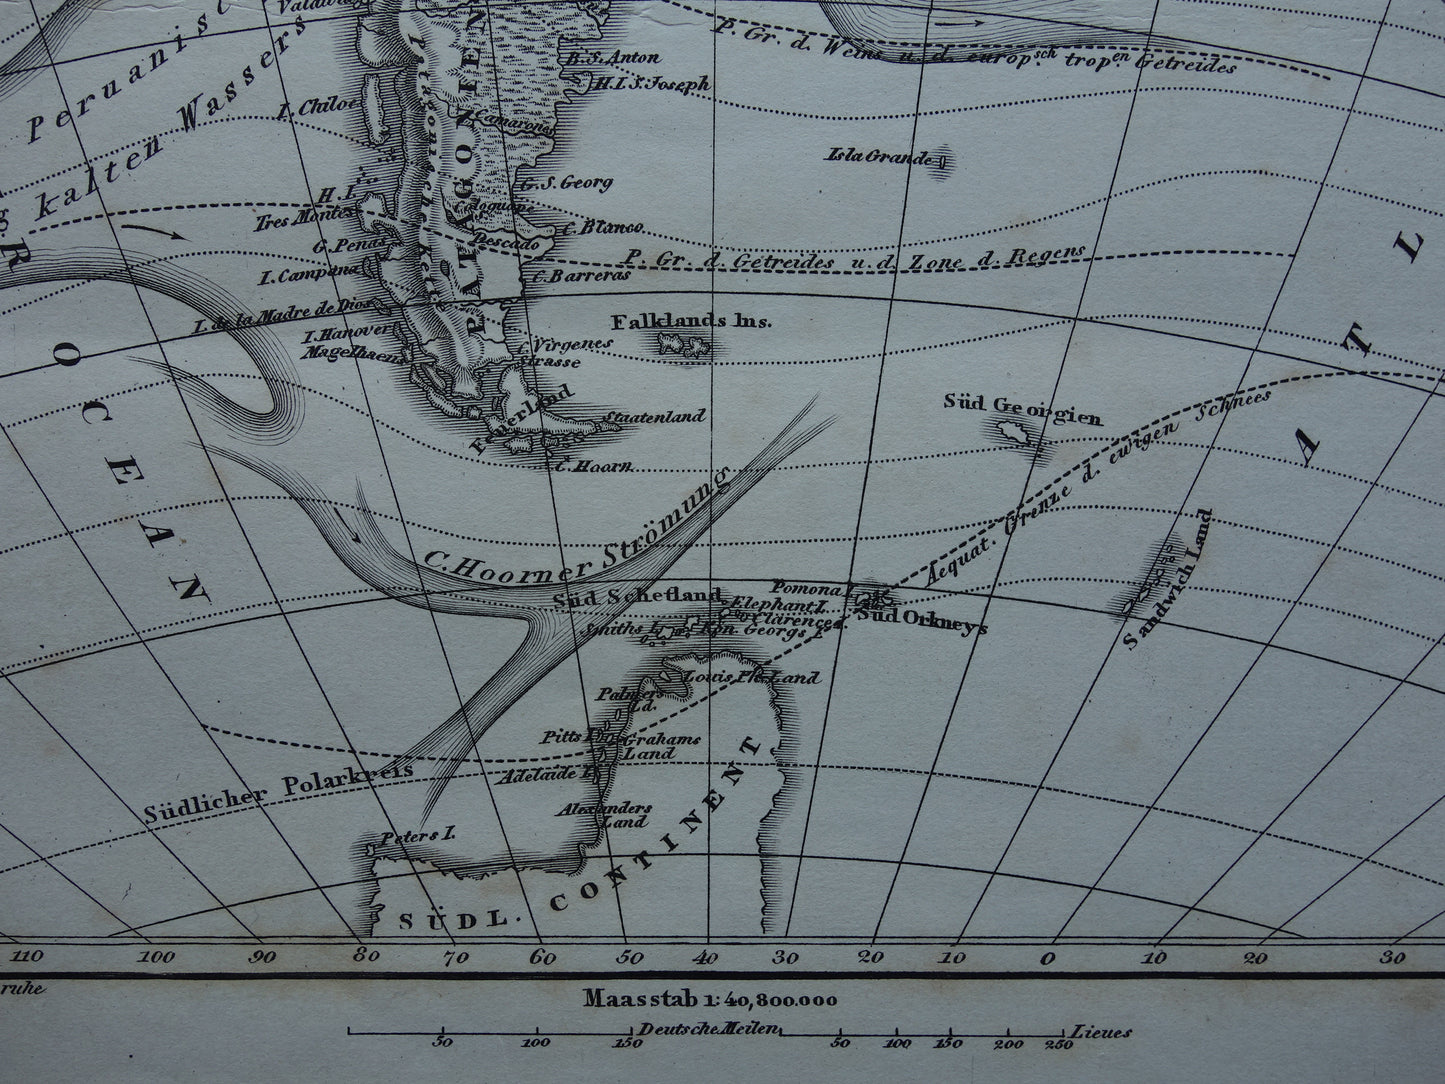 ZUID AMERIKA vintage landkaart 170+ jaar oude kaart van rivieren en oceanen uit 1849 - originele vintage historische kaarten